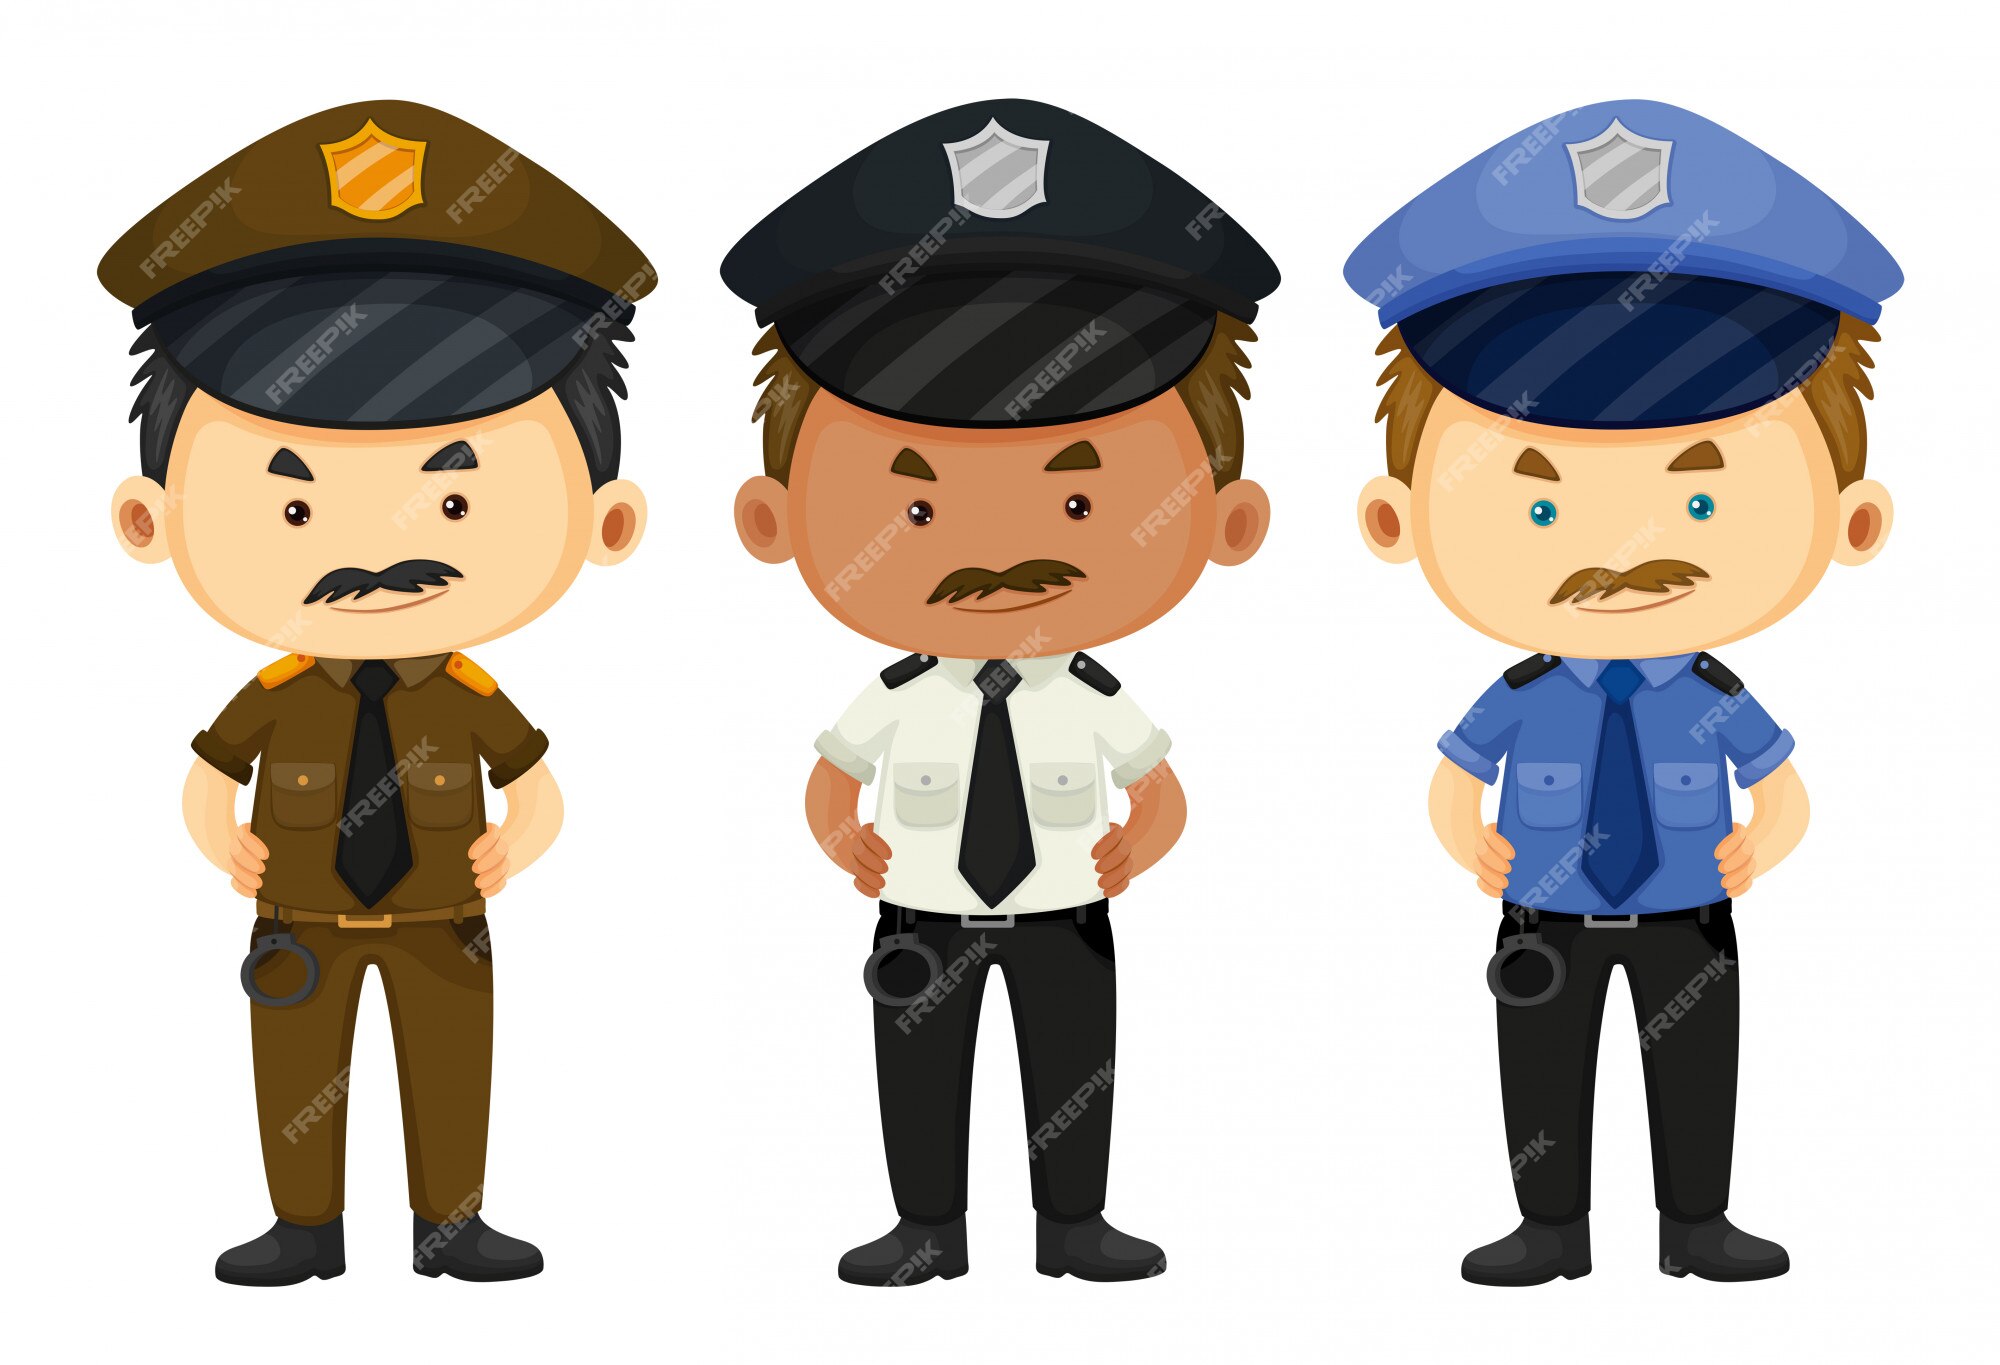 Police Officer Clip Art Images - Free Download on Freepik